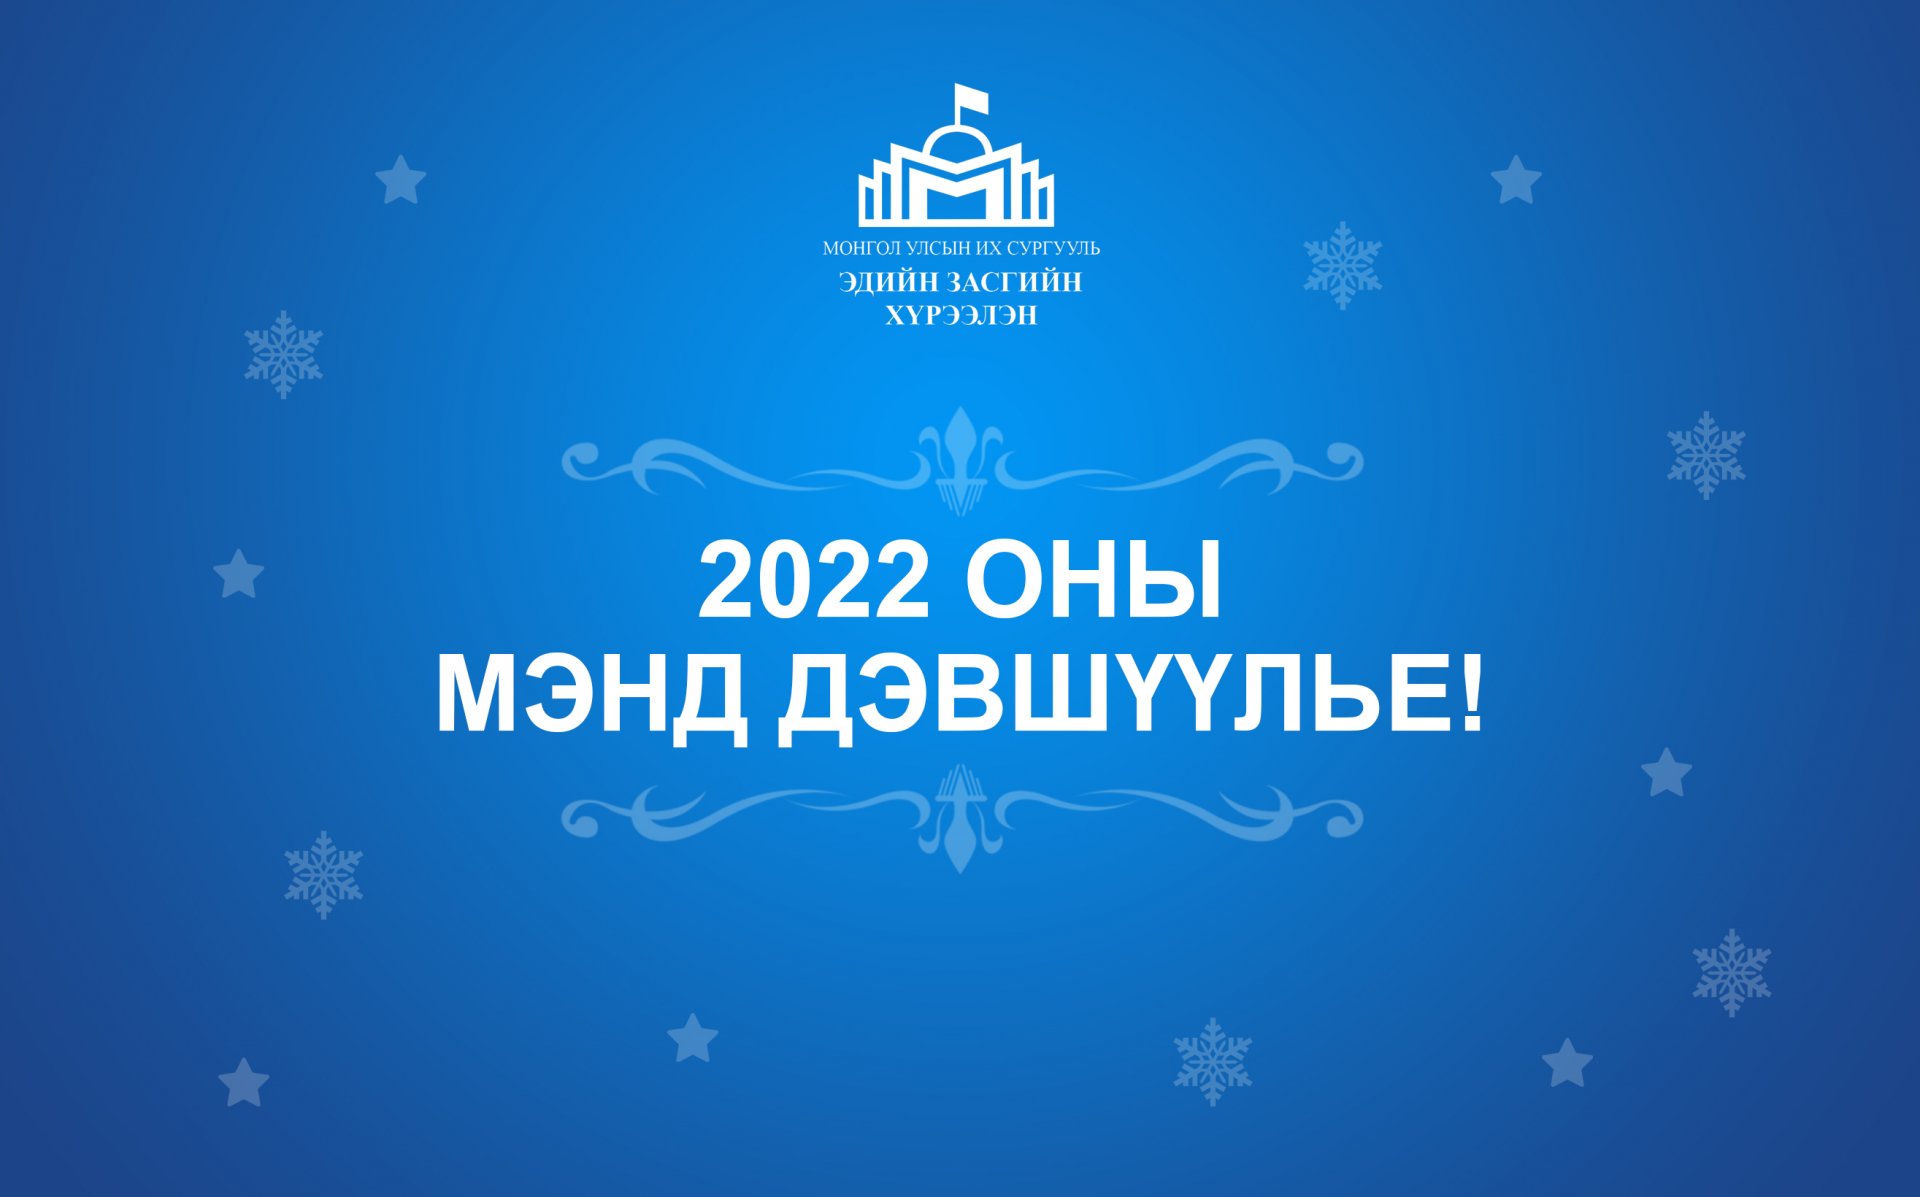 2022 оны мэнд дэвшүүлье!